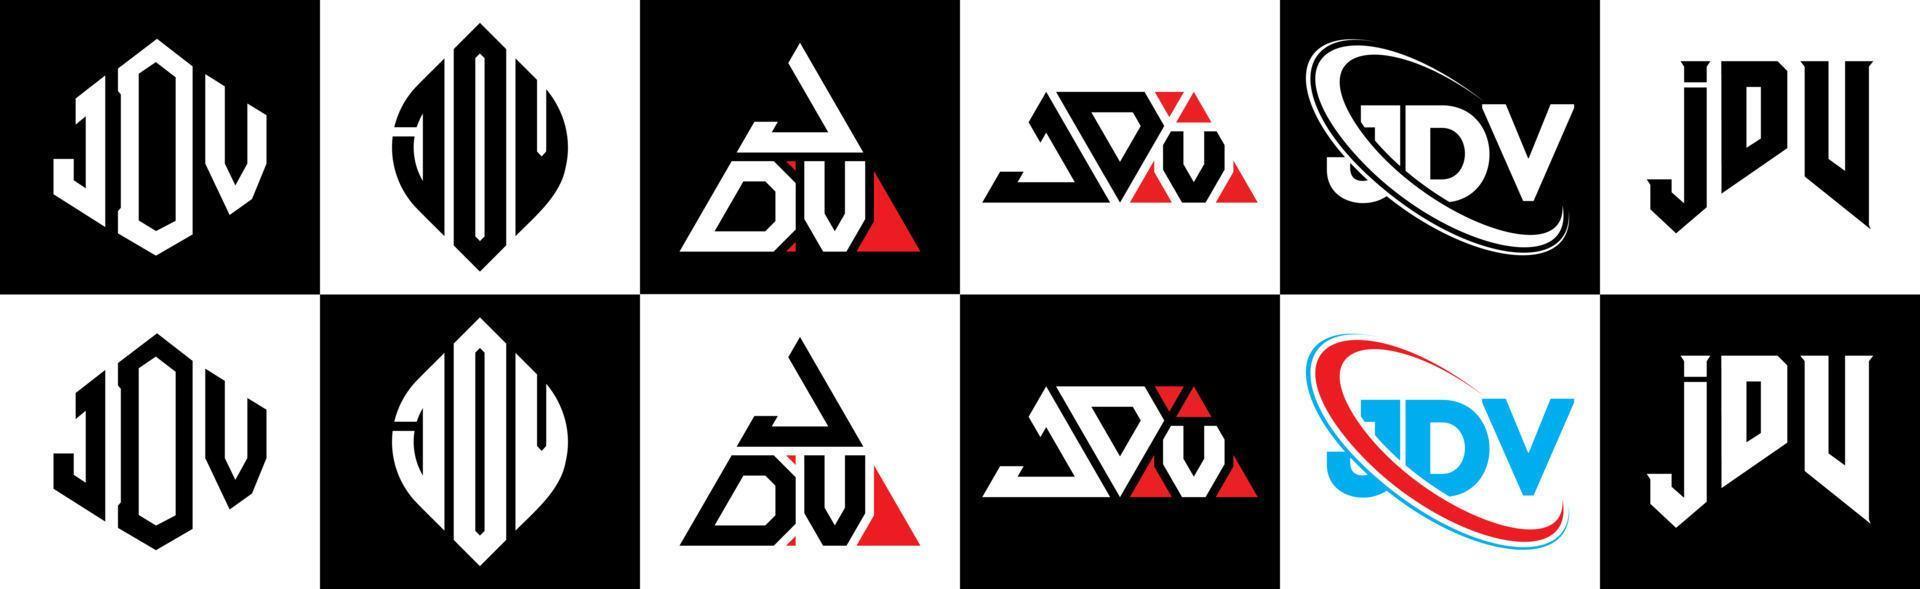 jdv-Buchstaben-Logo-Design in sechs Stilen. jdv polygon, kreis, dreieck, hexagon, flacher und einfacher stil mit schwarz-weißem farbvariationsbuchstabenlogo in einer zeichenfläche. jdv minimalistisches und klassisches logo vektor